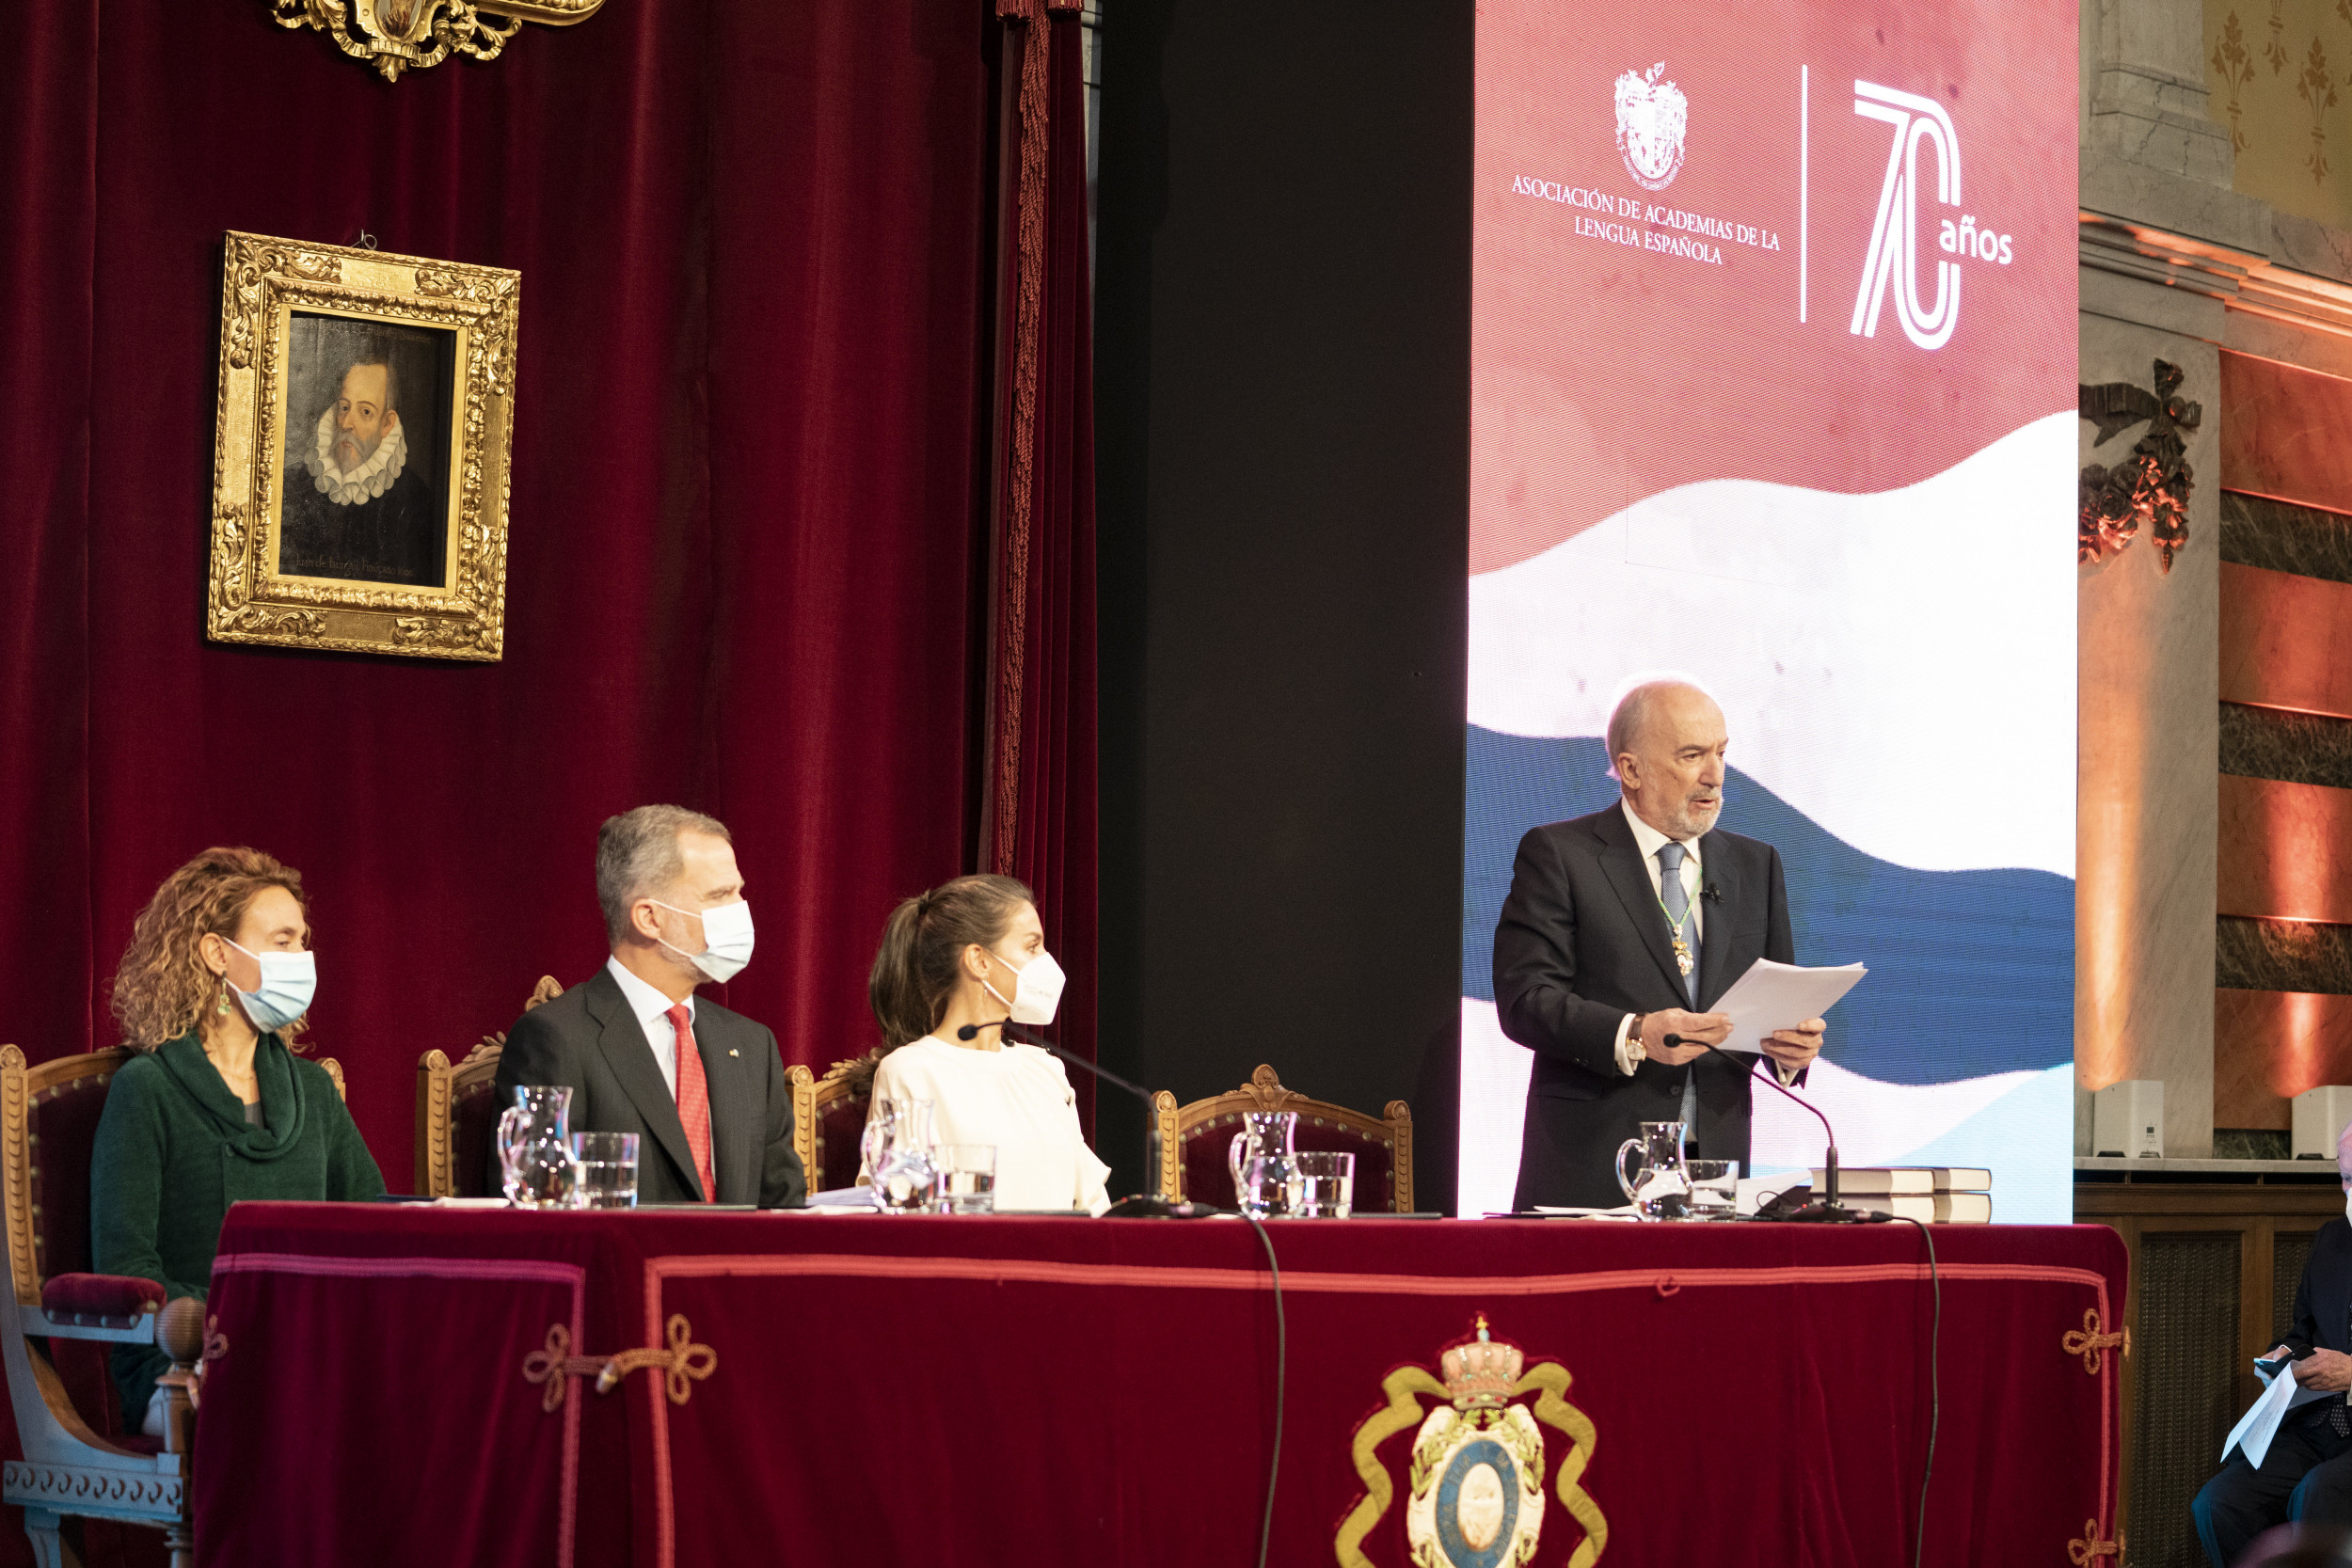 La Asociación De Academias De La Lengua Española Celebra Su 70 º Aniversario Bajo La Presidencia